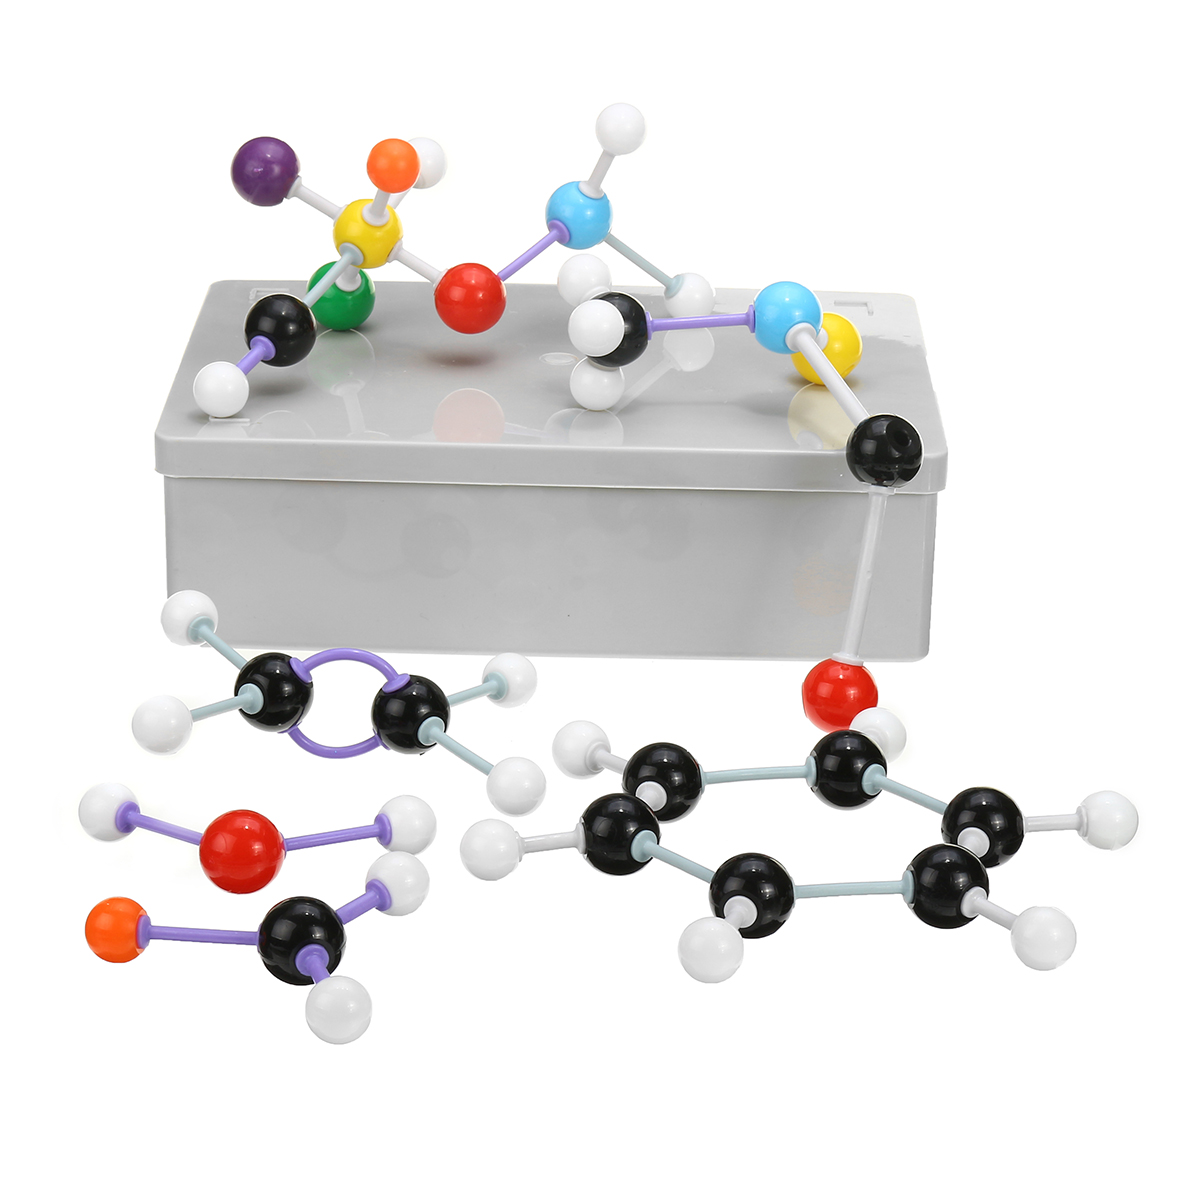 

267Pcs Молекулярная модель набора Химия Наука Игрушка Образовательные Atom Atomic Molecules Particle Набор